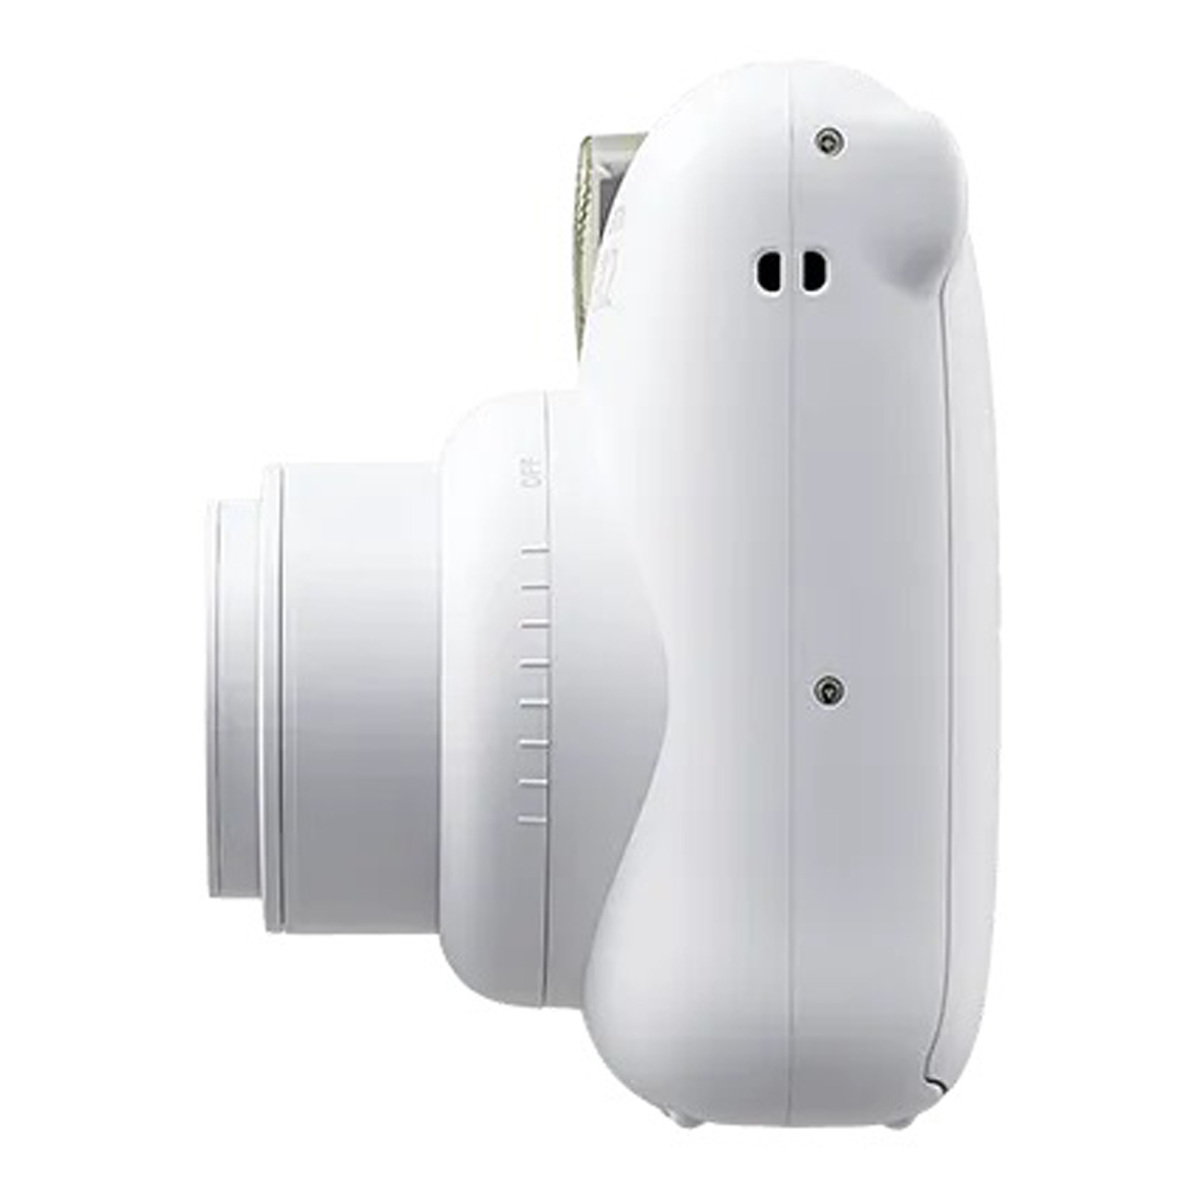 فوجي فيلم كاميرا التصوير الفوري إنستاكس ميني 12 ، أبيض ثلجي